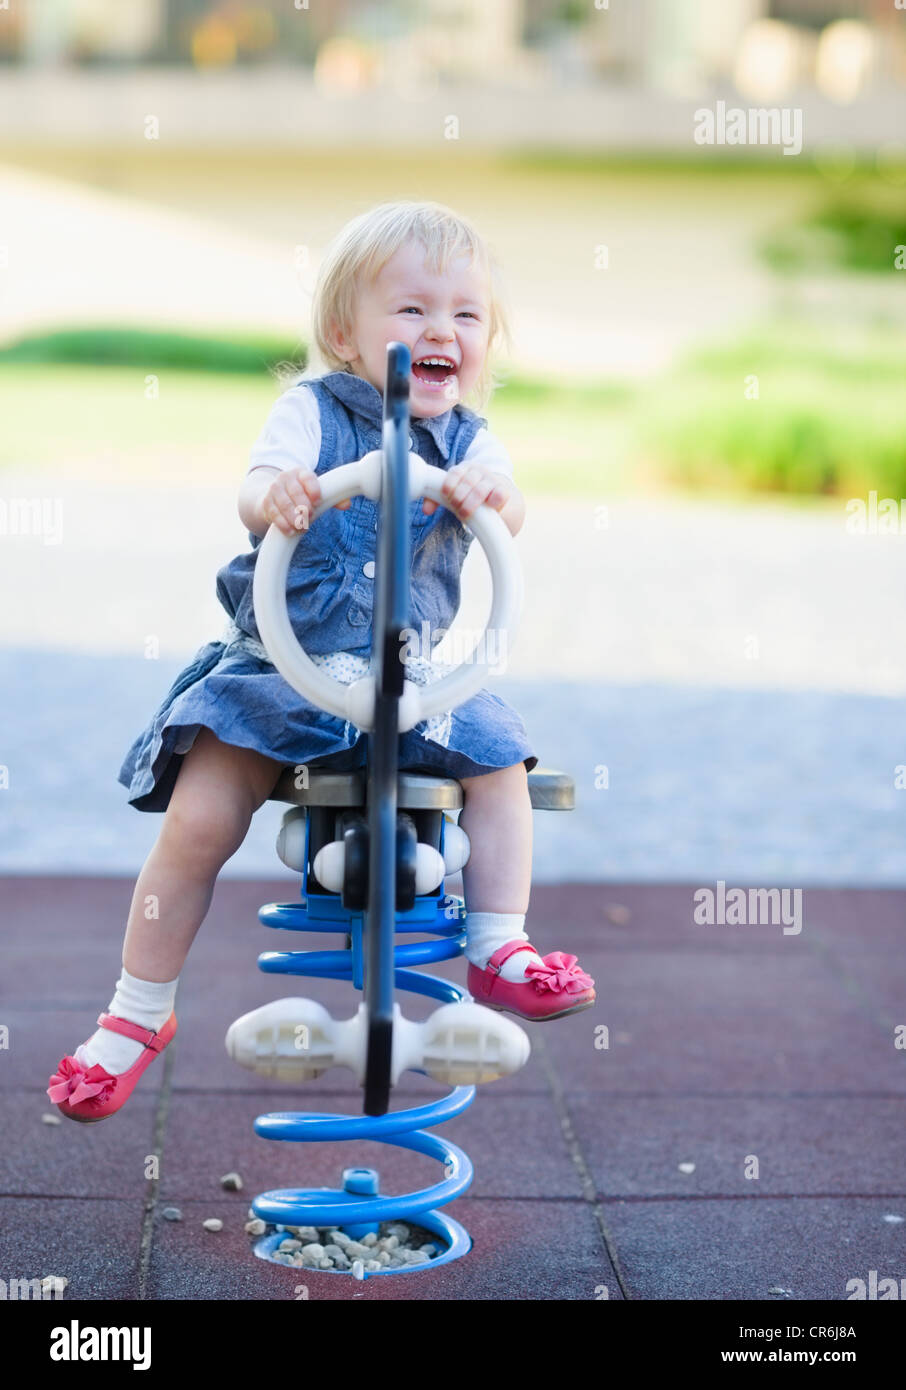 Happy baby swinging on horse on playground Stock Photo